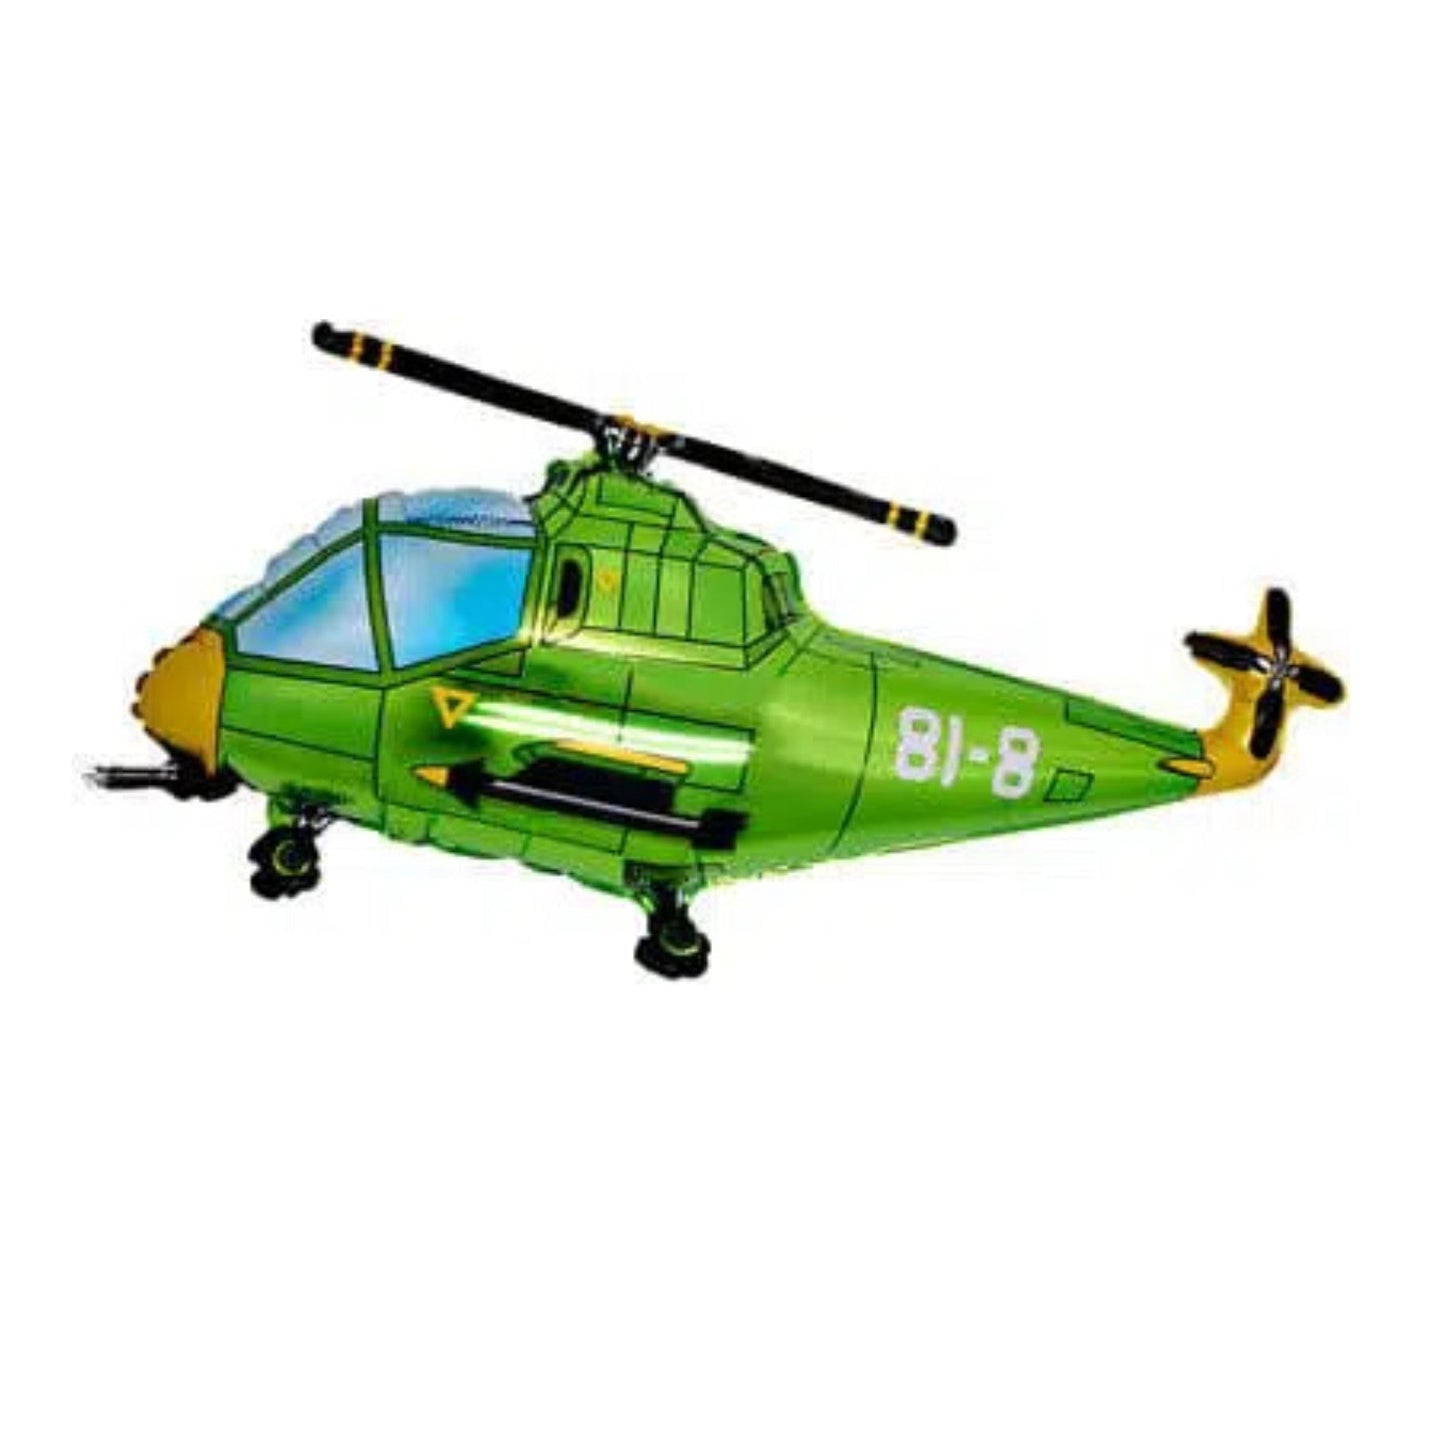 XXL Folienballon "Helikopter" 76cm - Party im Karton